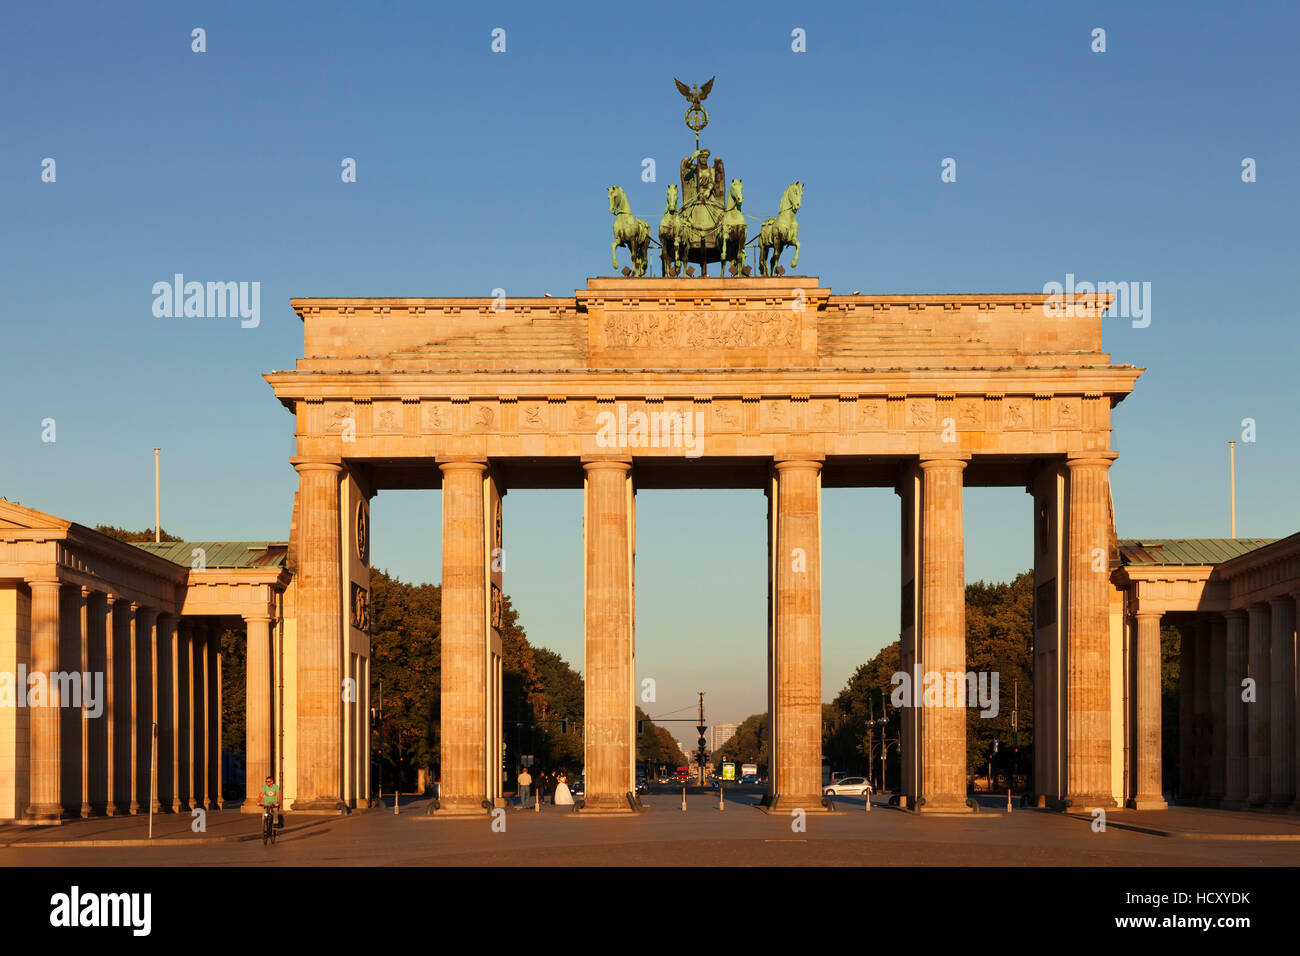 Porte de Brandebourg (Brandenburger Tor) au lever du soleil, Quadrige, Berlin Mitte, Berlin, Allemagne Banque D'Images